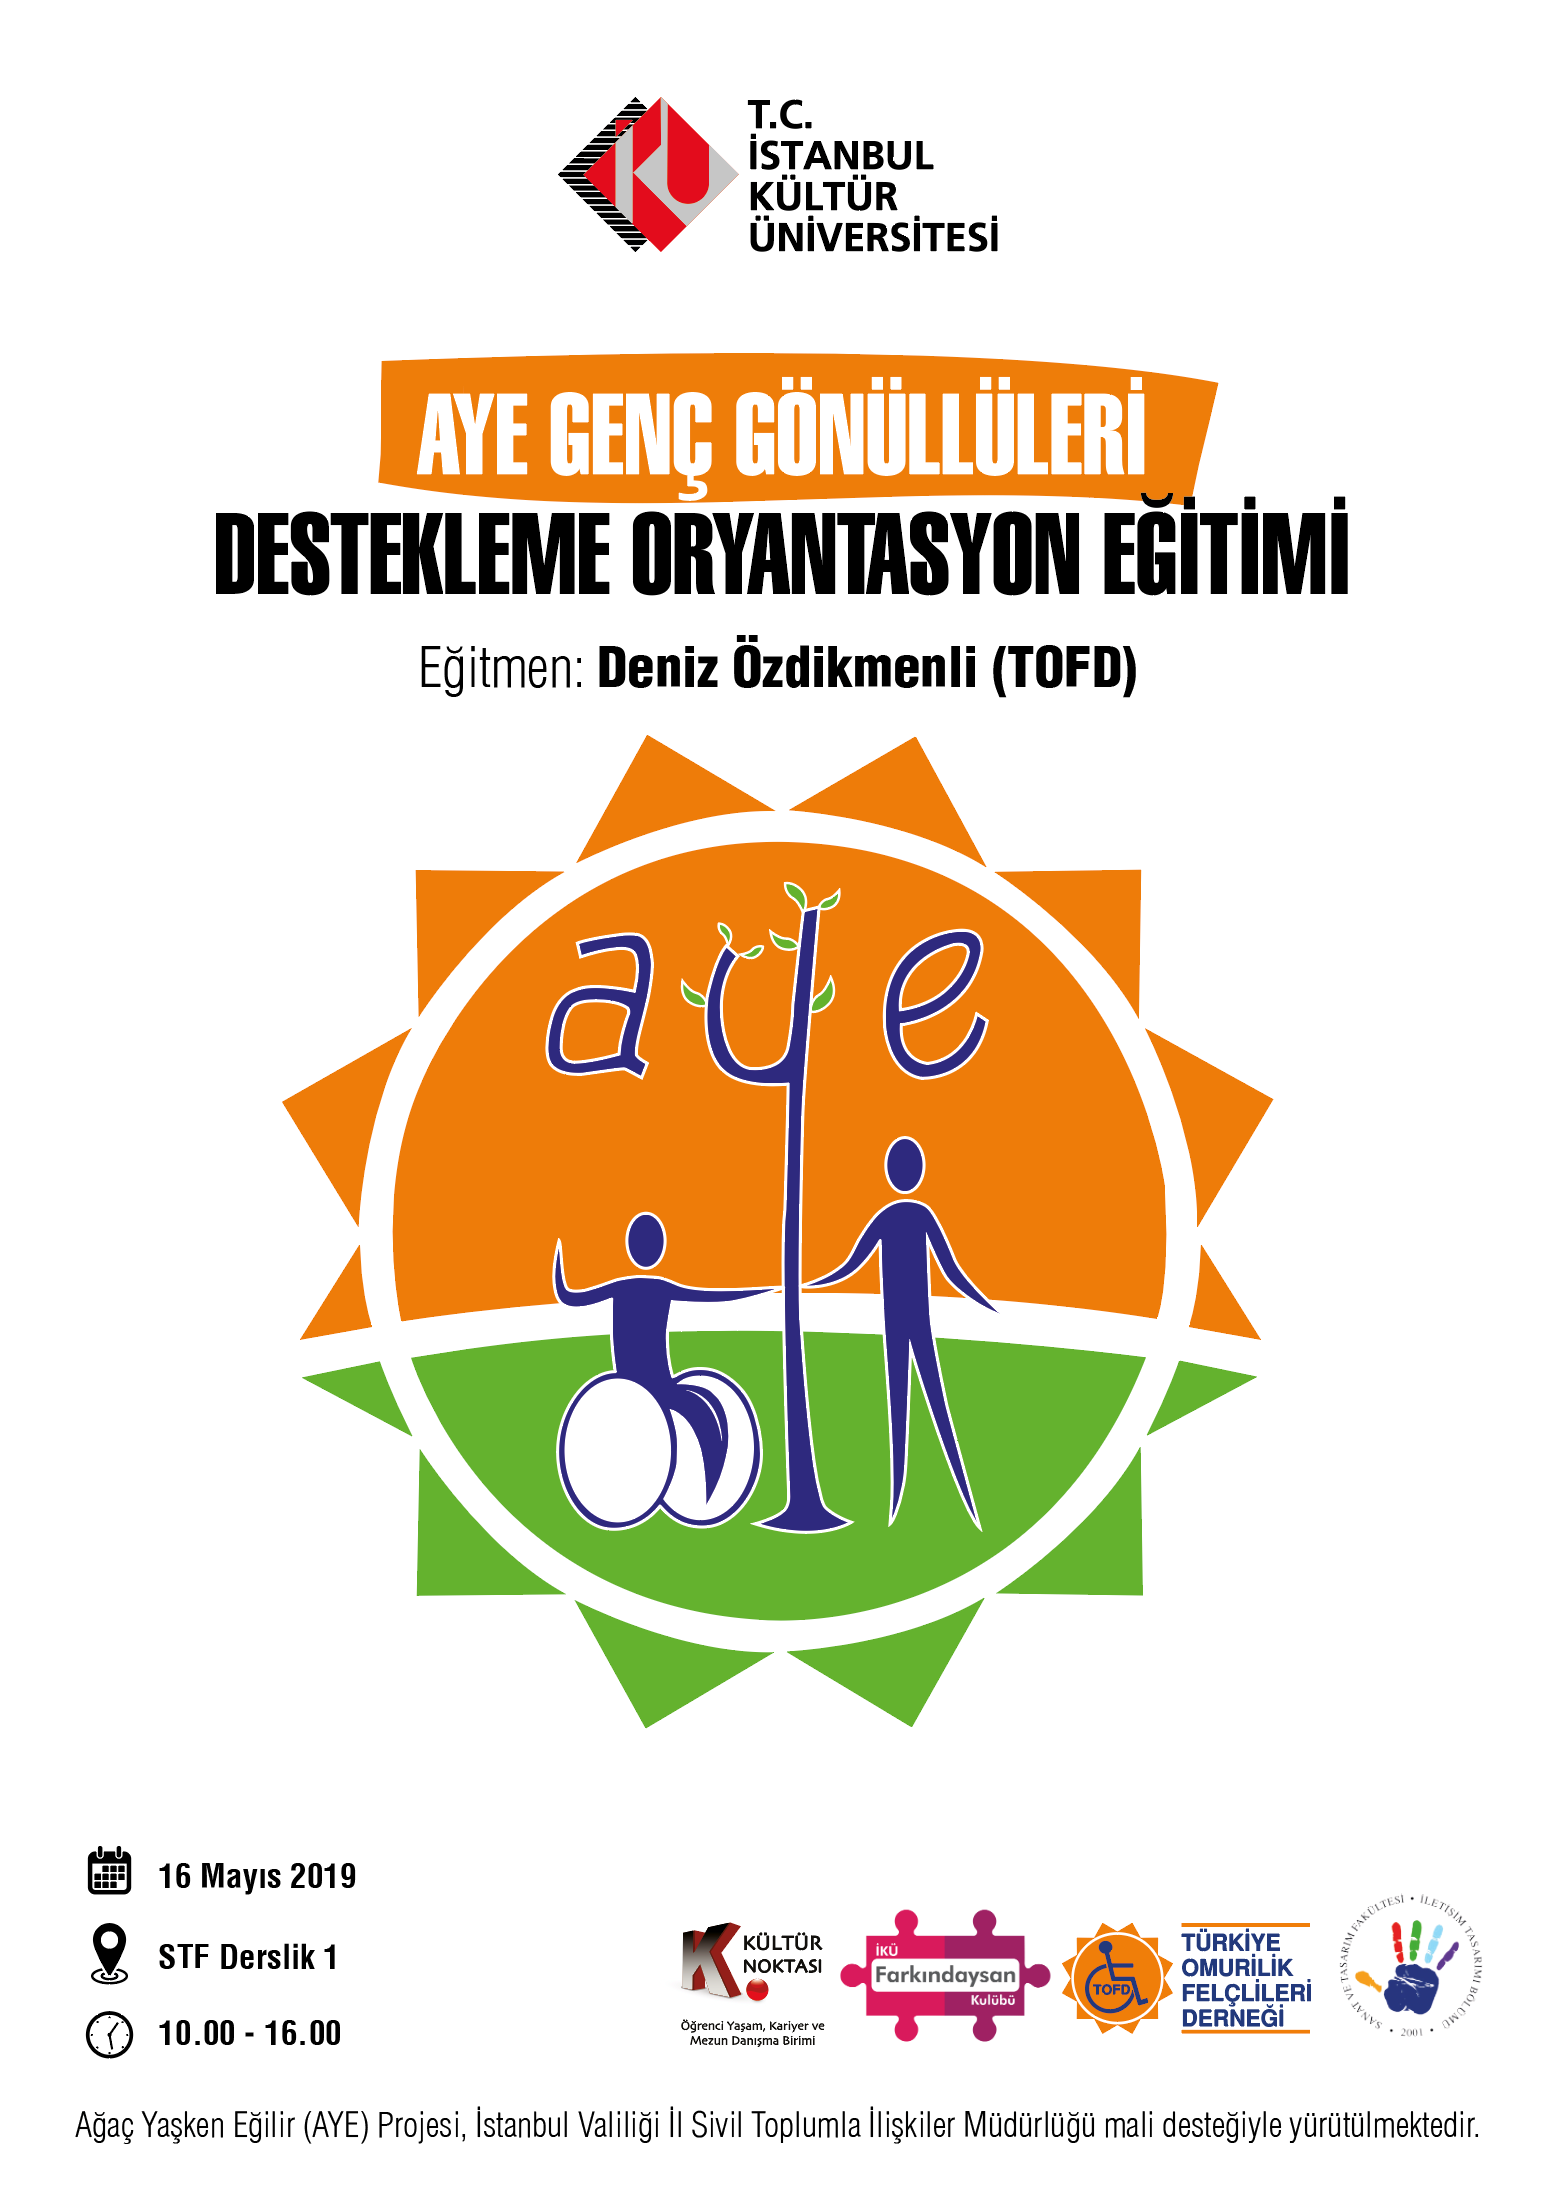 TOFD (Türkiye Omurilik Felçlileri Derneği) AYE (Ağaç Yaşken Eğilir) Genç Gönüllüleri destekleme oryantasyon eğitimi